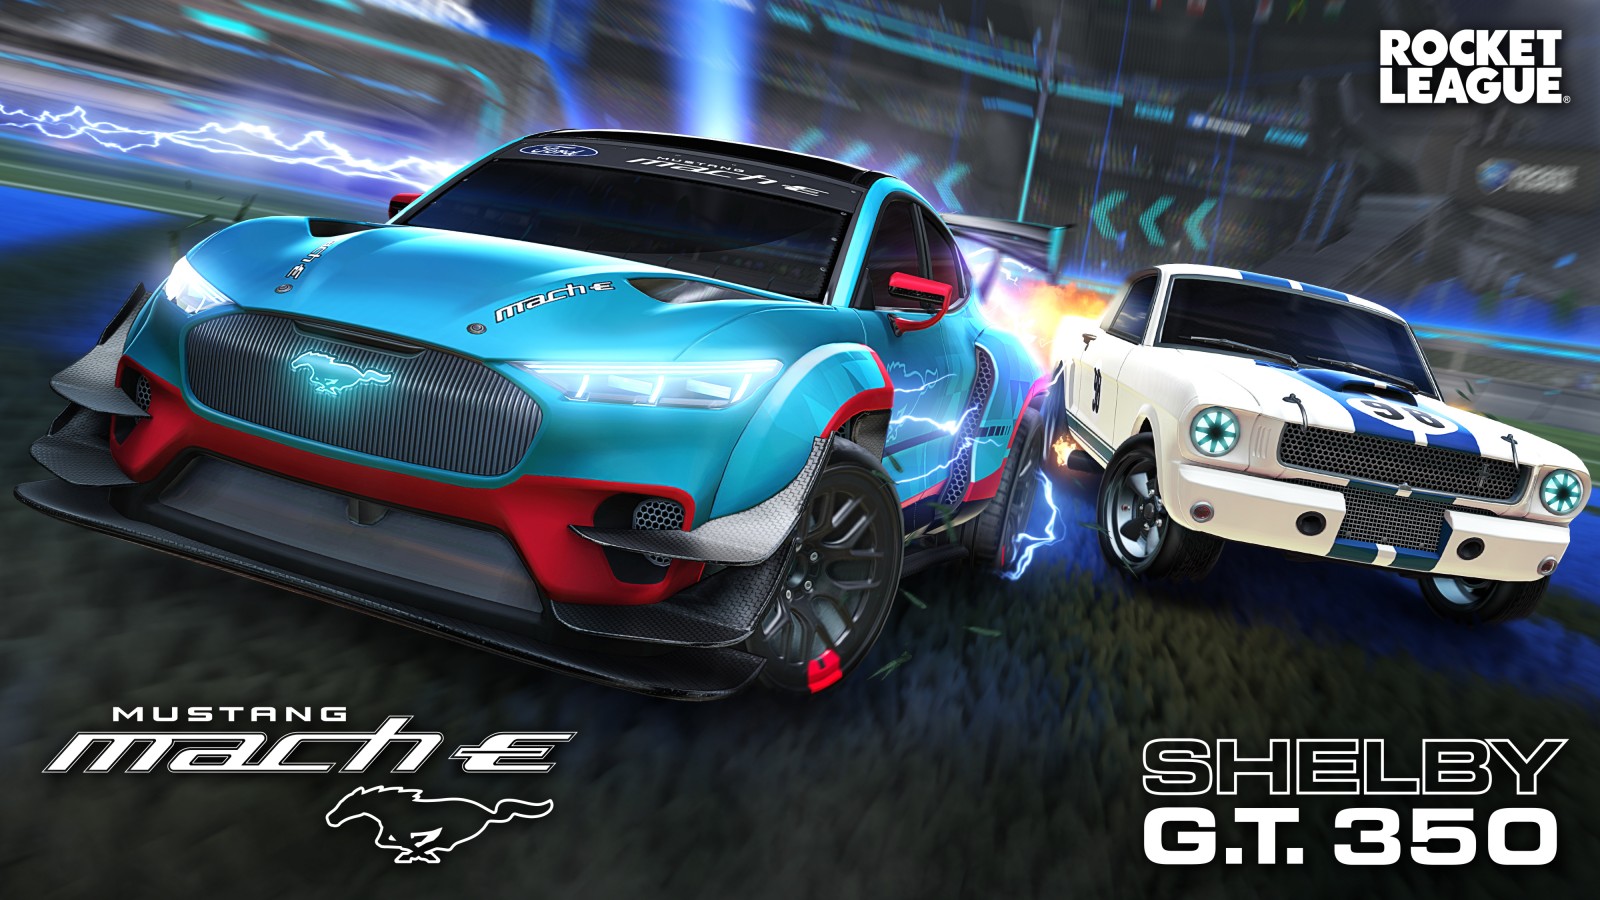 Rocket League: Ford y Psyonix anuncian una nueva colaboración 3